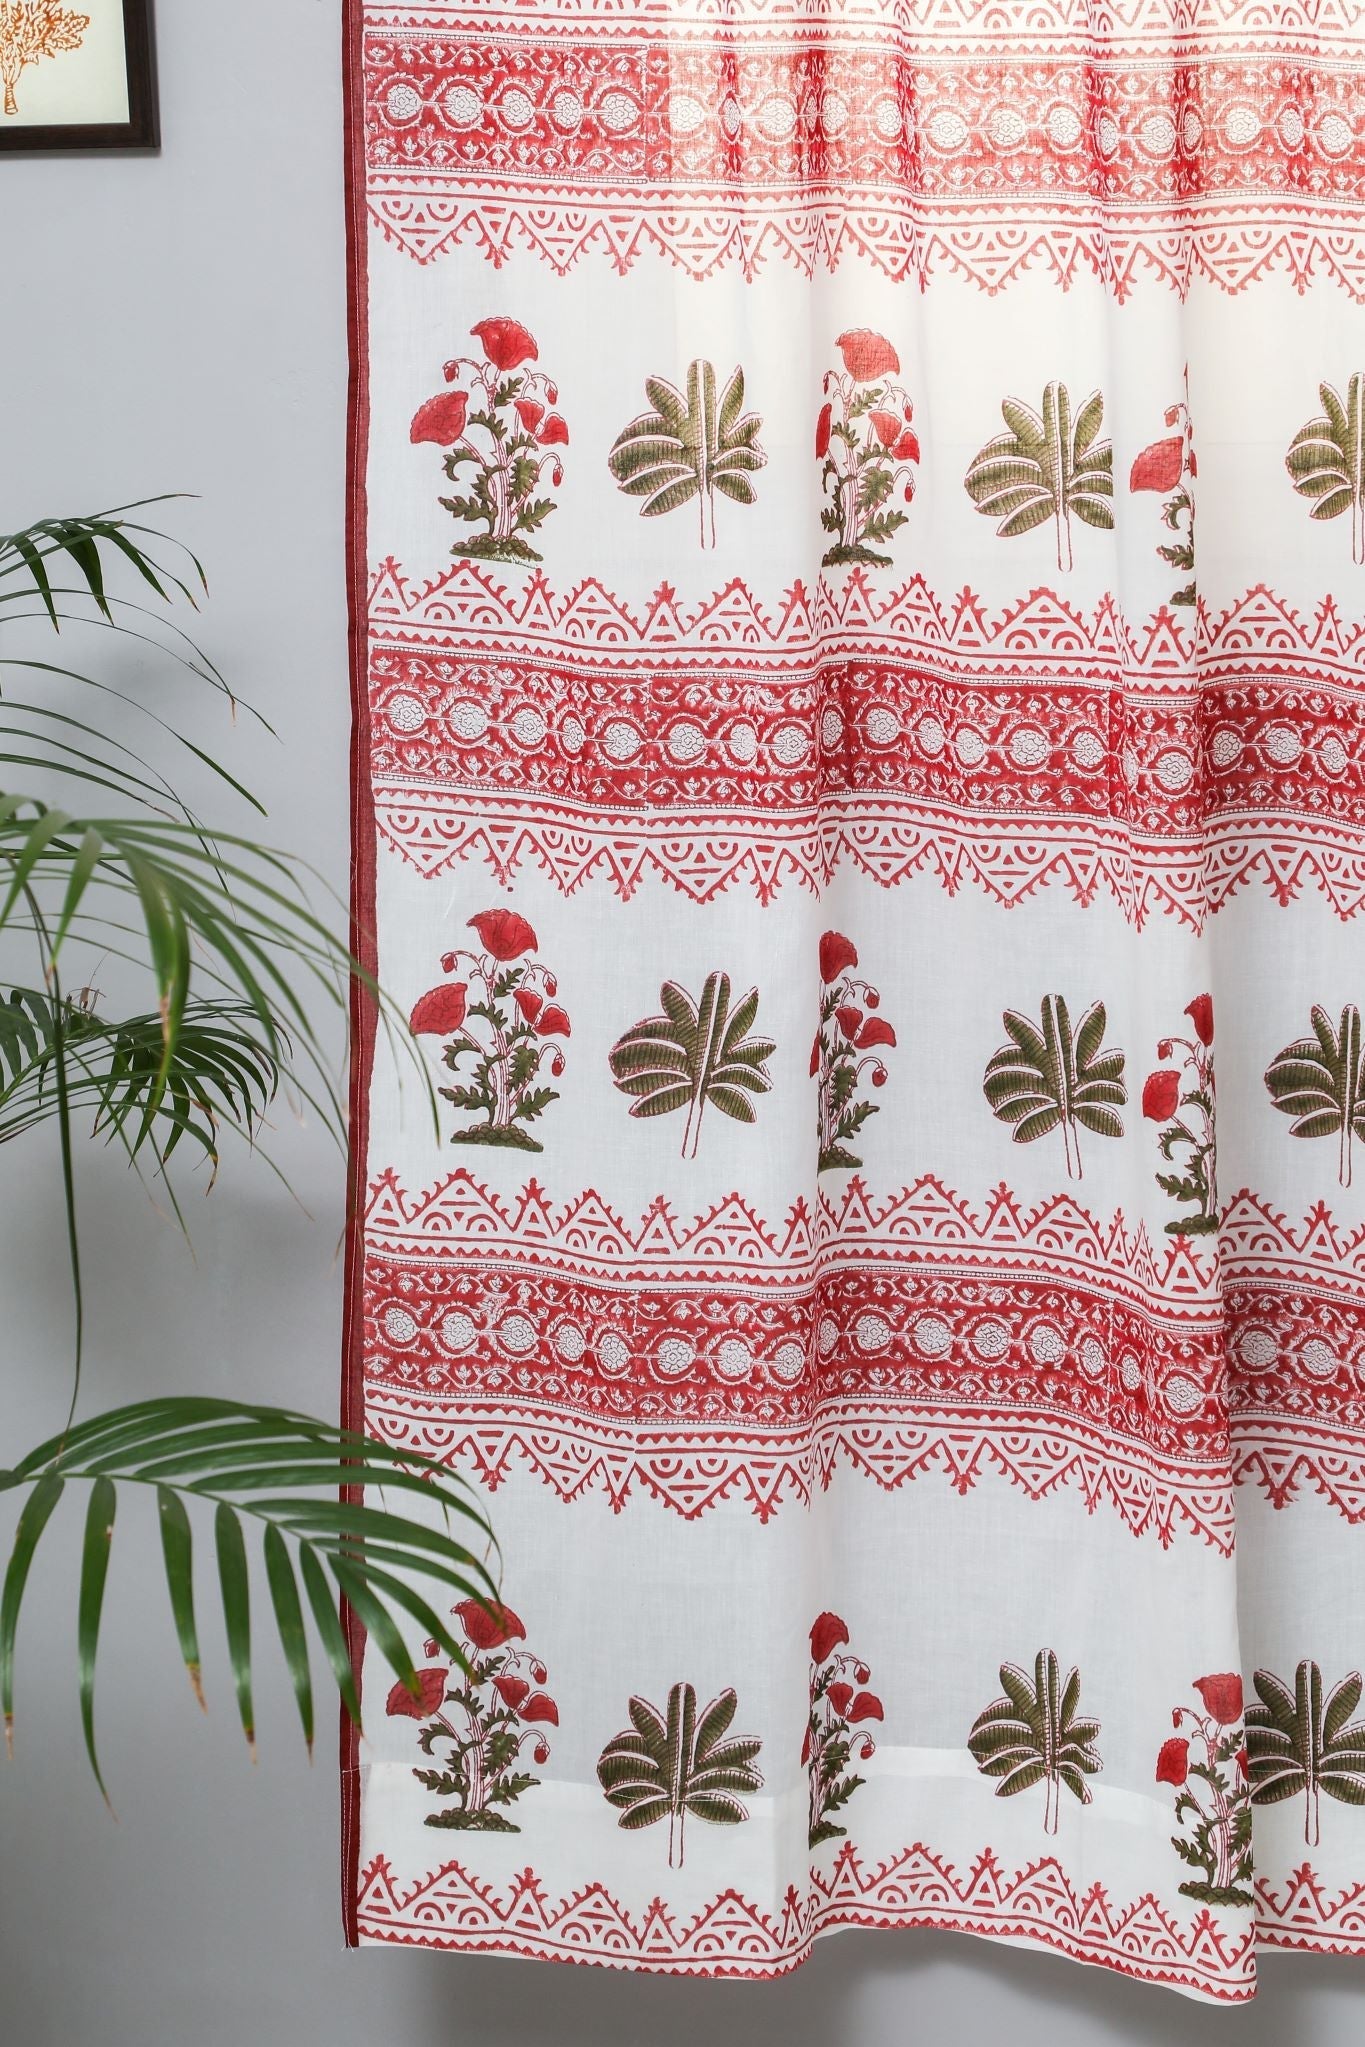 SootiSyahi 'Made on Earth' Handblock Printed Cotton Door Curtain - SootiSyahi